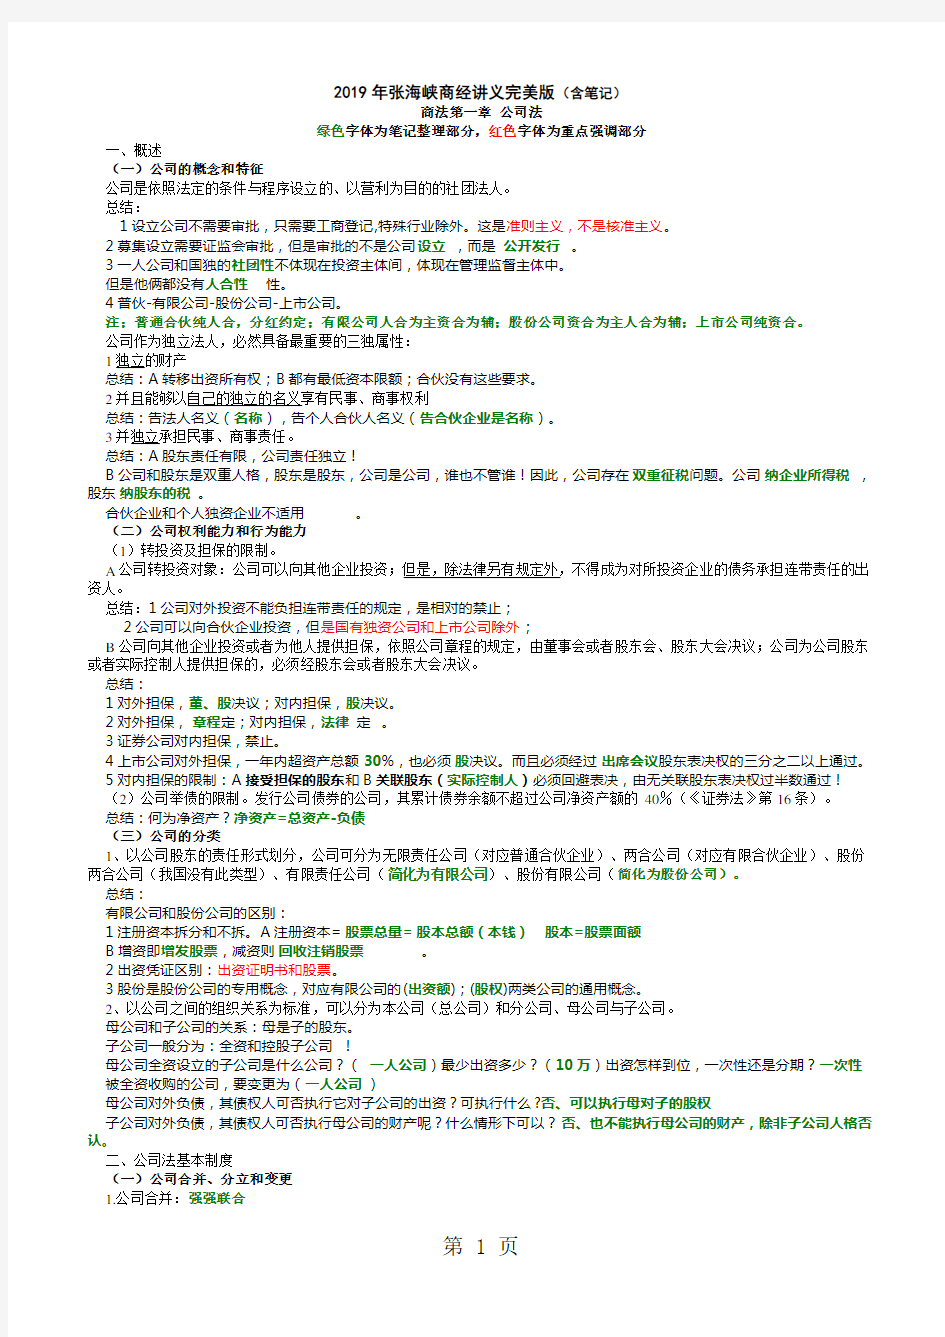 2019年张海峡商经讲义完美版含笔记整理共38页word资料